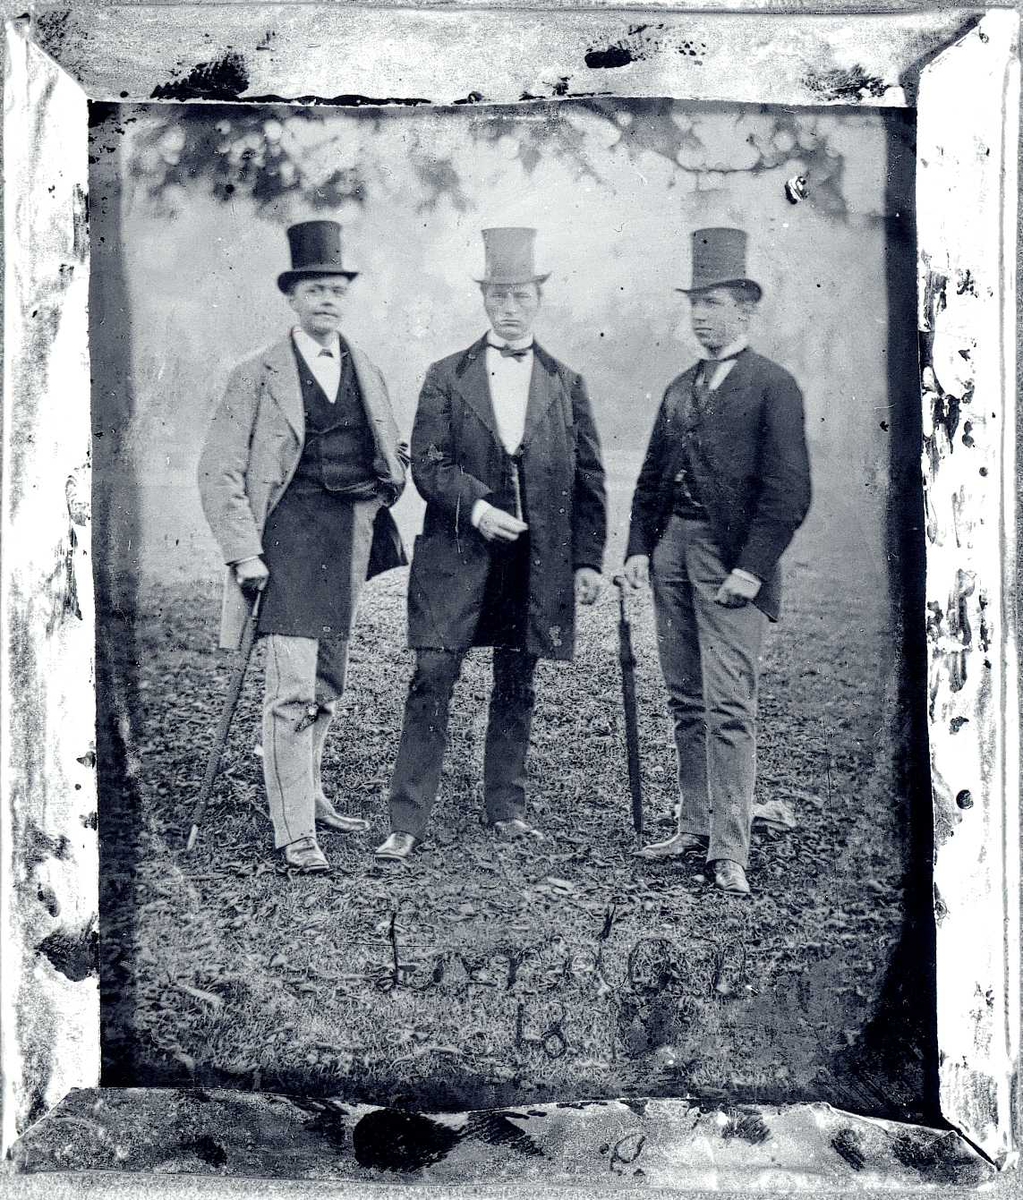 Gruppeportrett av tre menn.